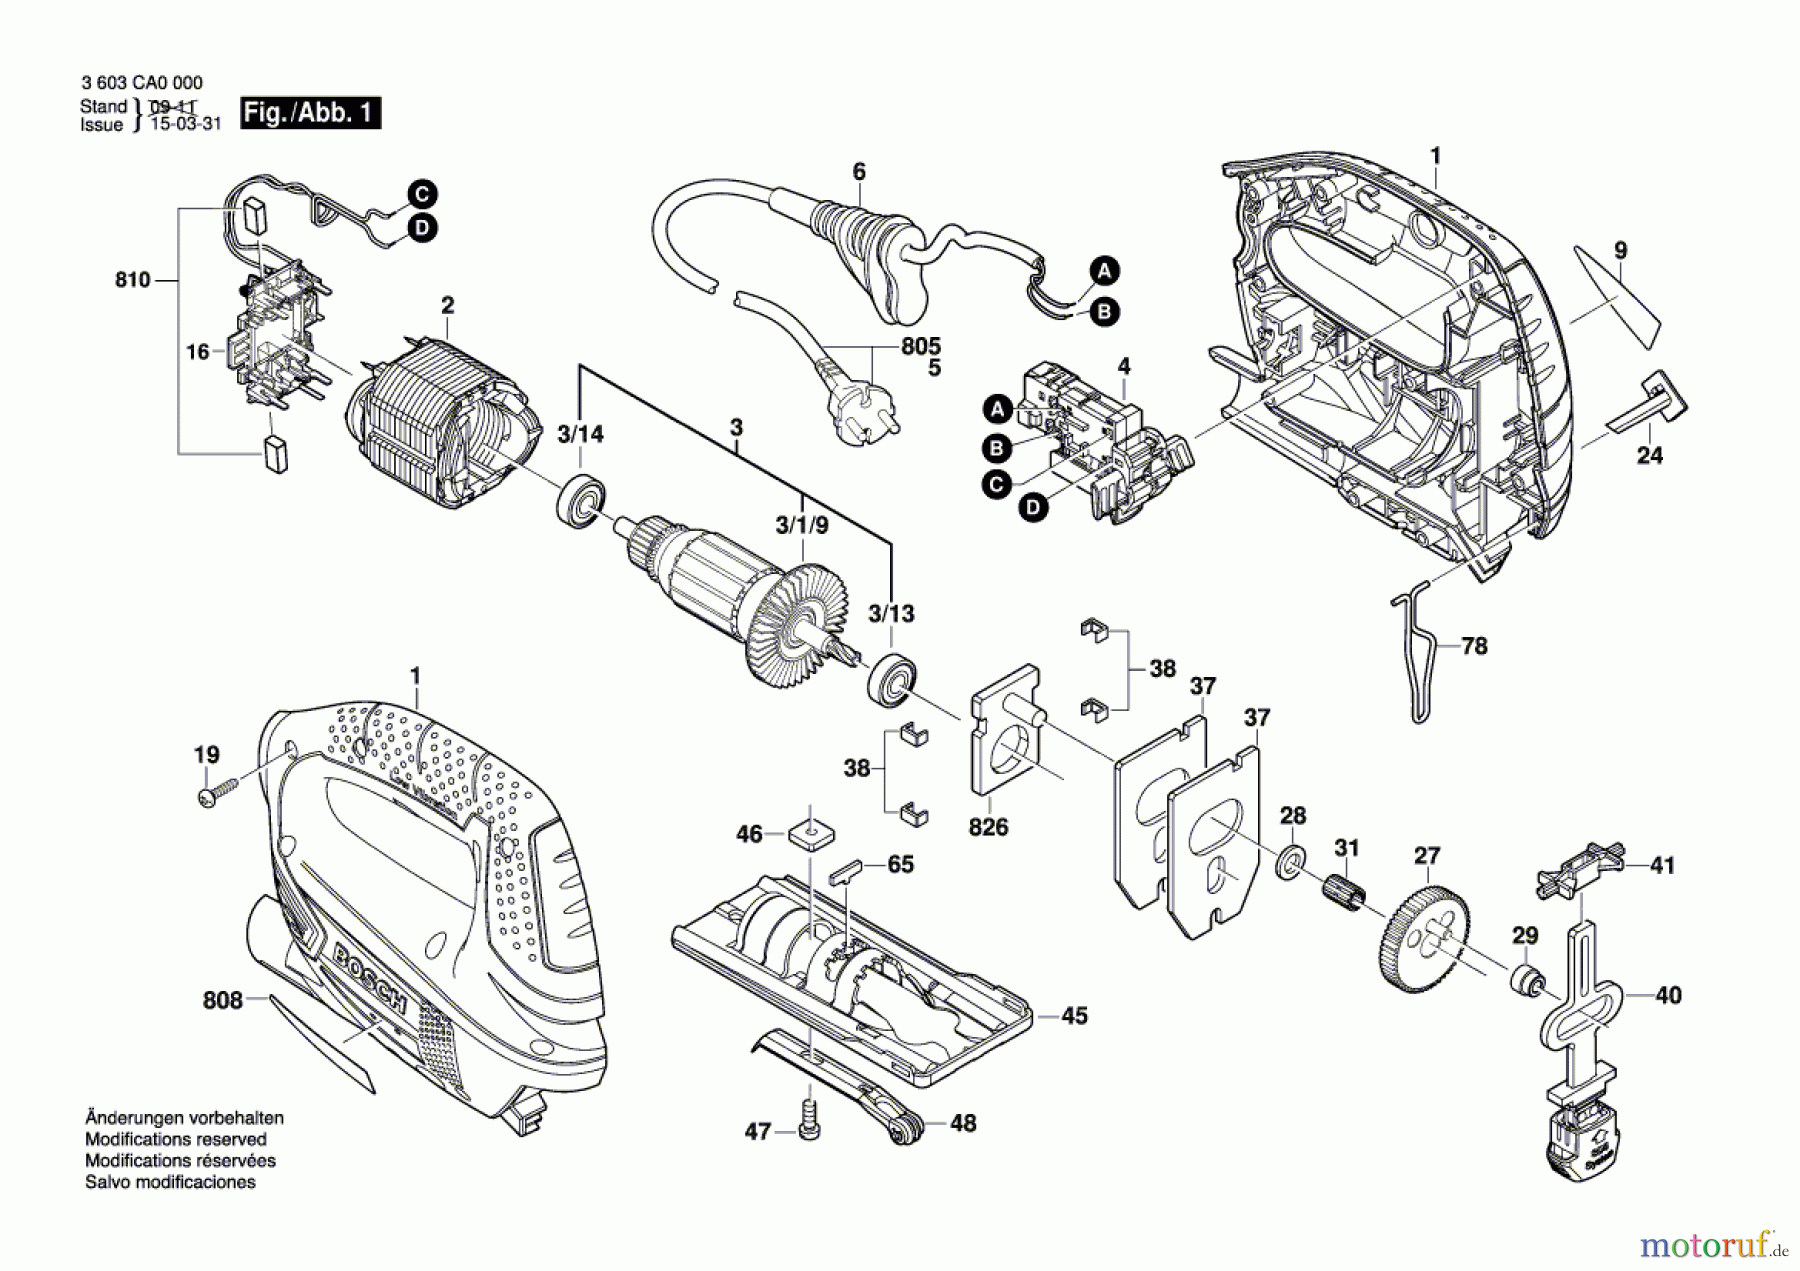  Bosch Werkzeug Stichsäge PST 650 Seite 1